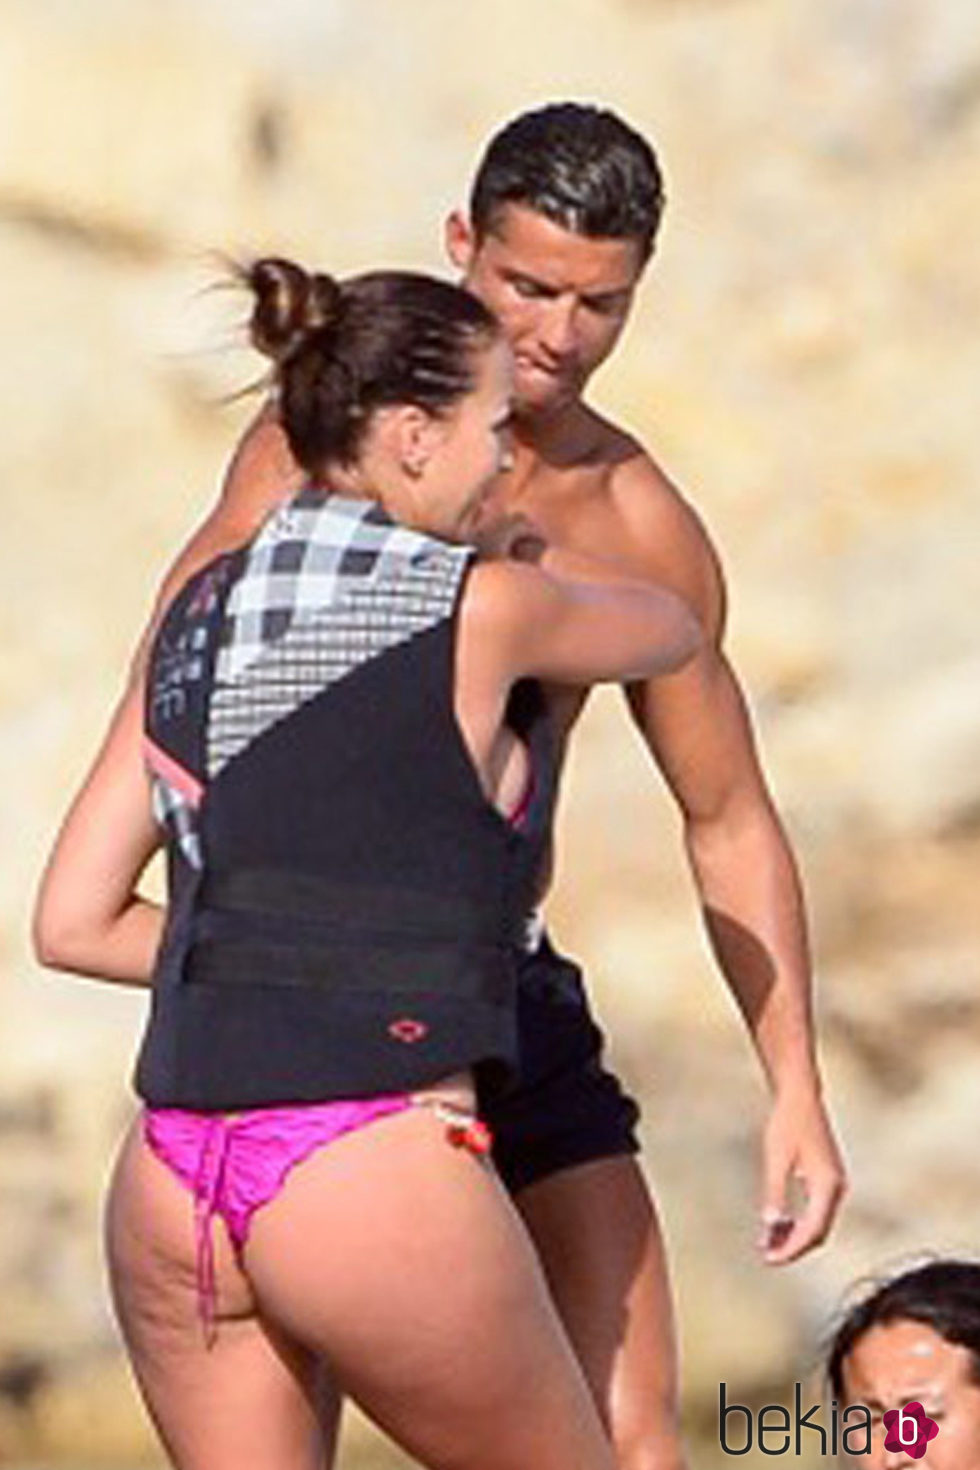 Cristiano Ronaldo en compañía de una chica exuberante